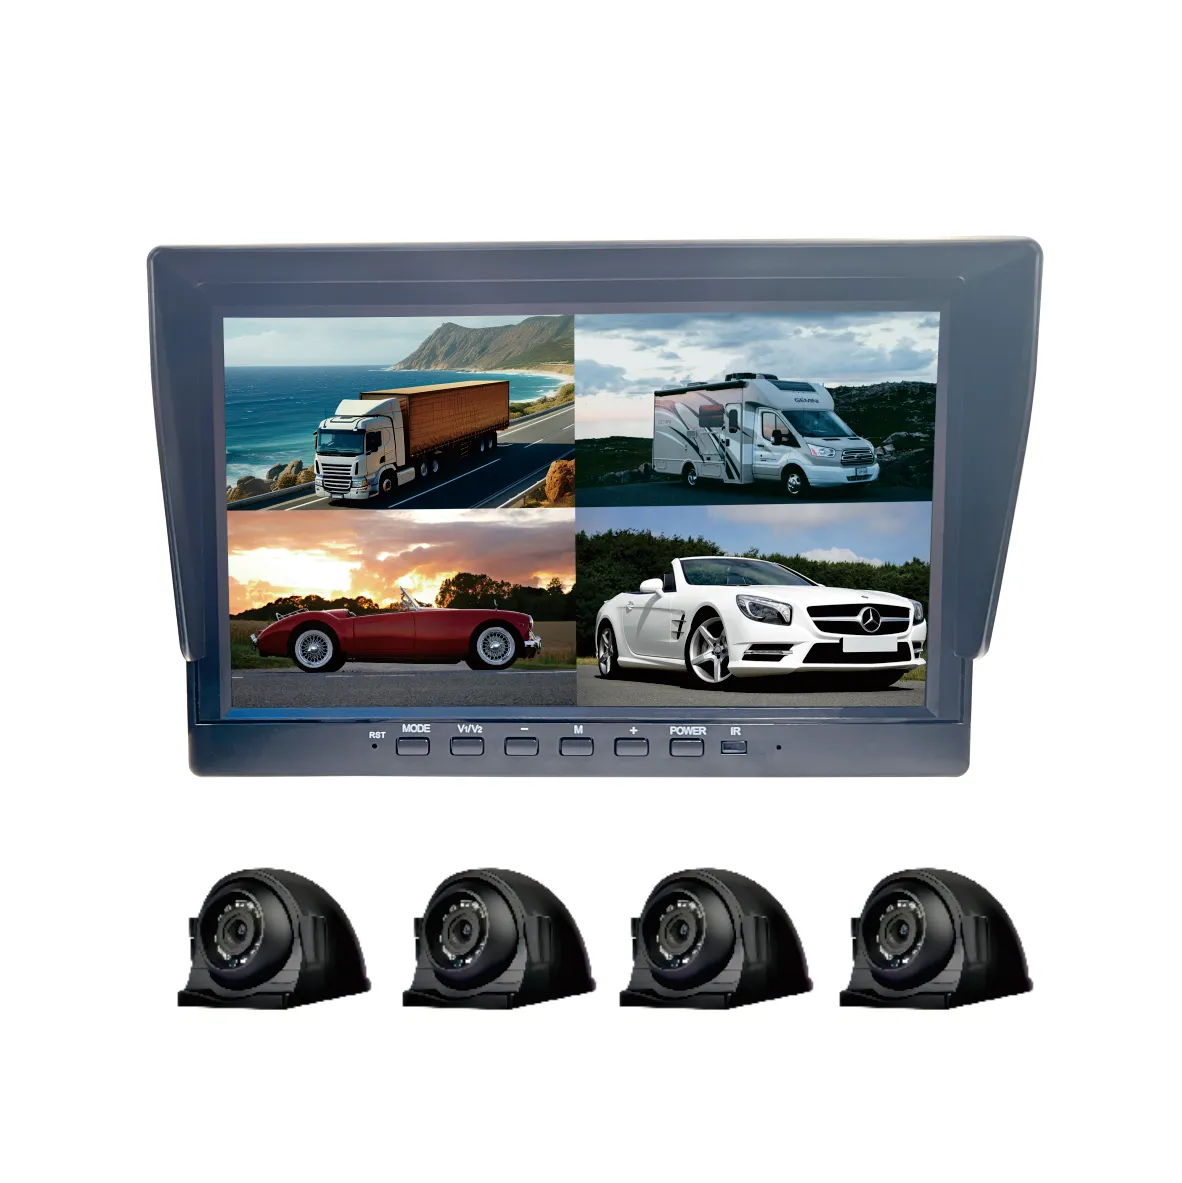 Layar empat HD 7 inci, kamera dengan penglihatan malam 1080P atau 720P, sistem kamera dasbor samping tahan air untuk bus perjalanan dan bus sekolah